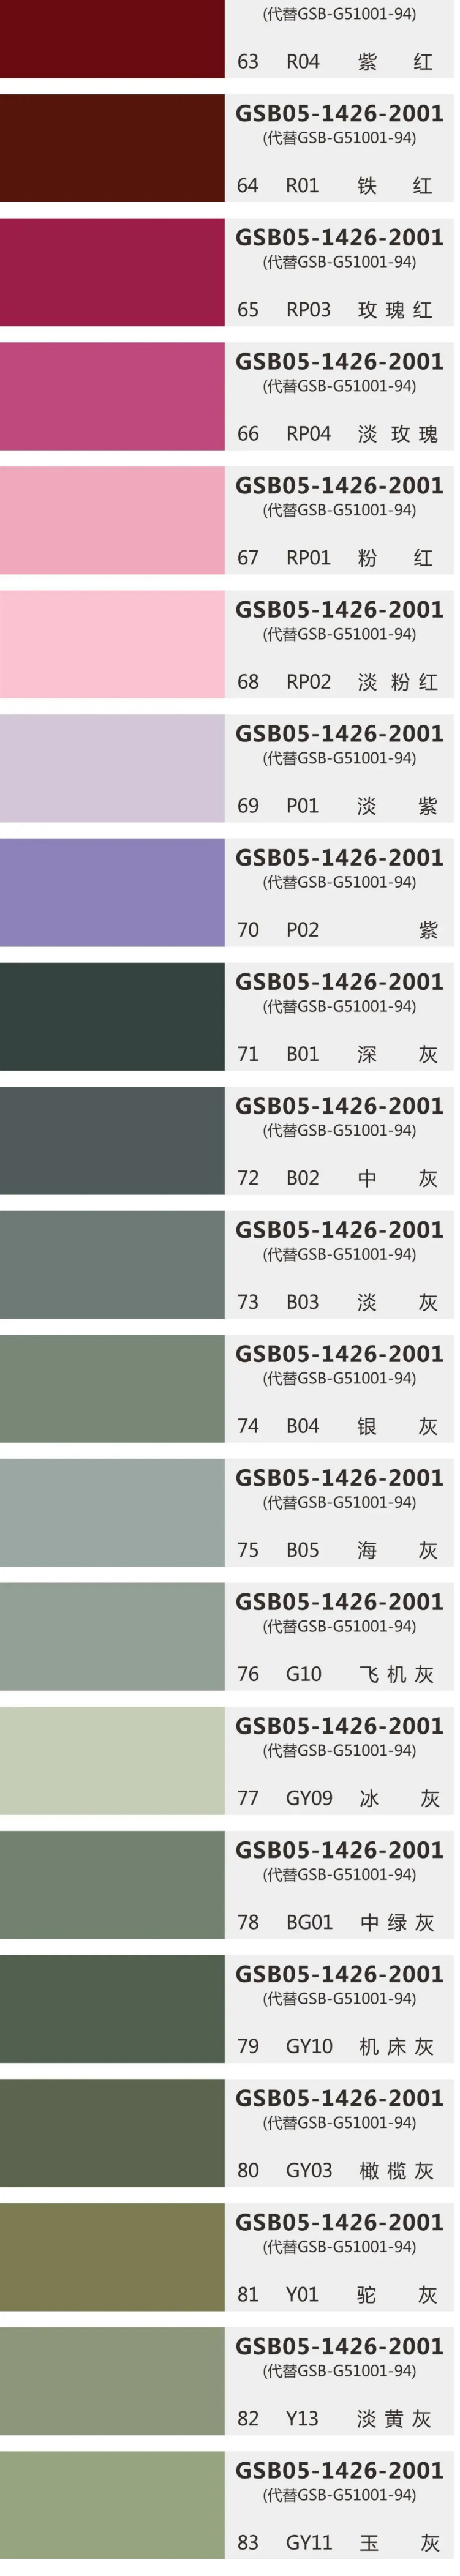 环氧地坪国标色卡GSB05-1426-2001（83色完整版）—电子收藏版_04.jpg